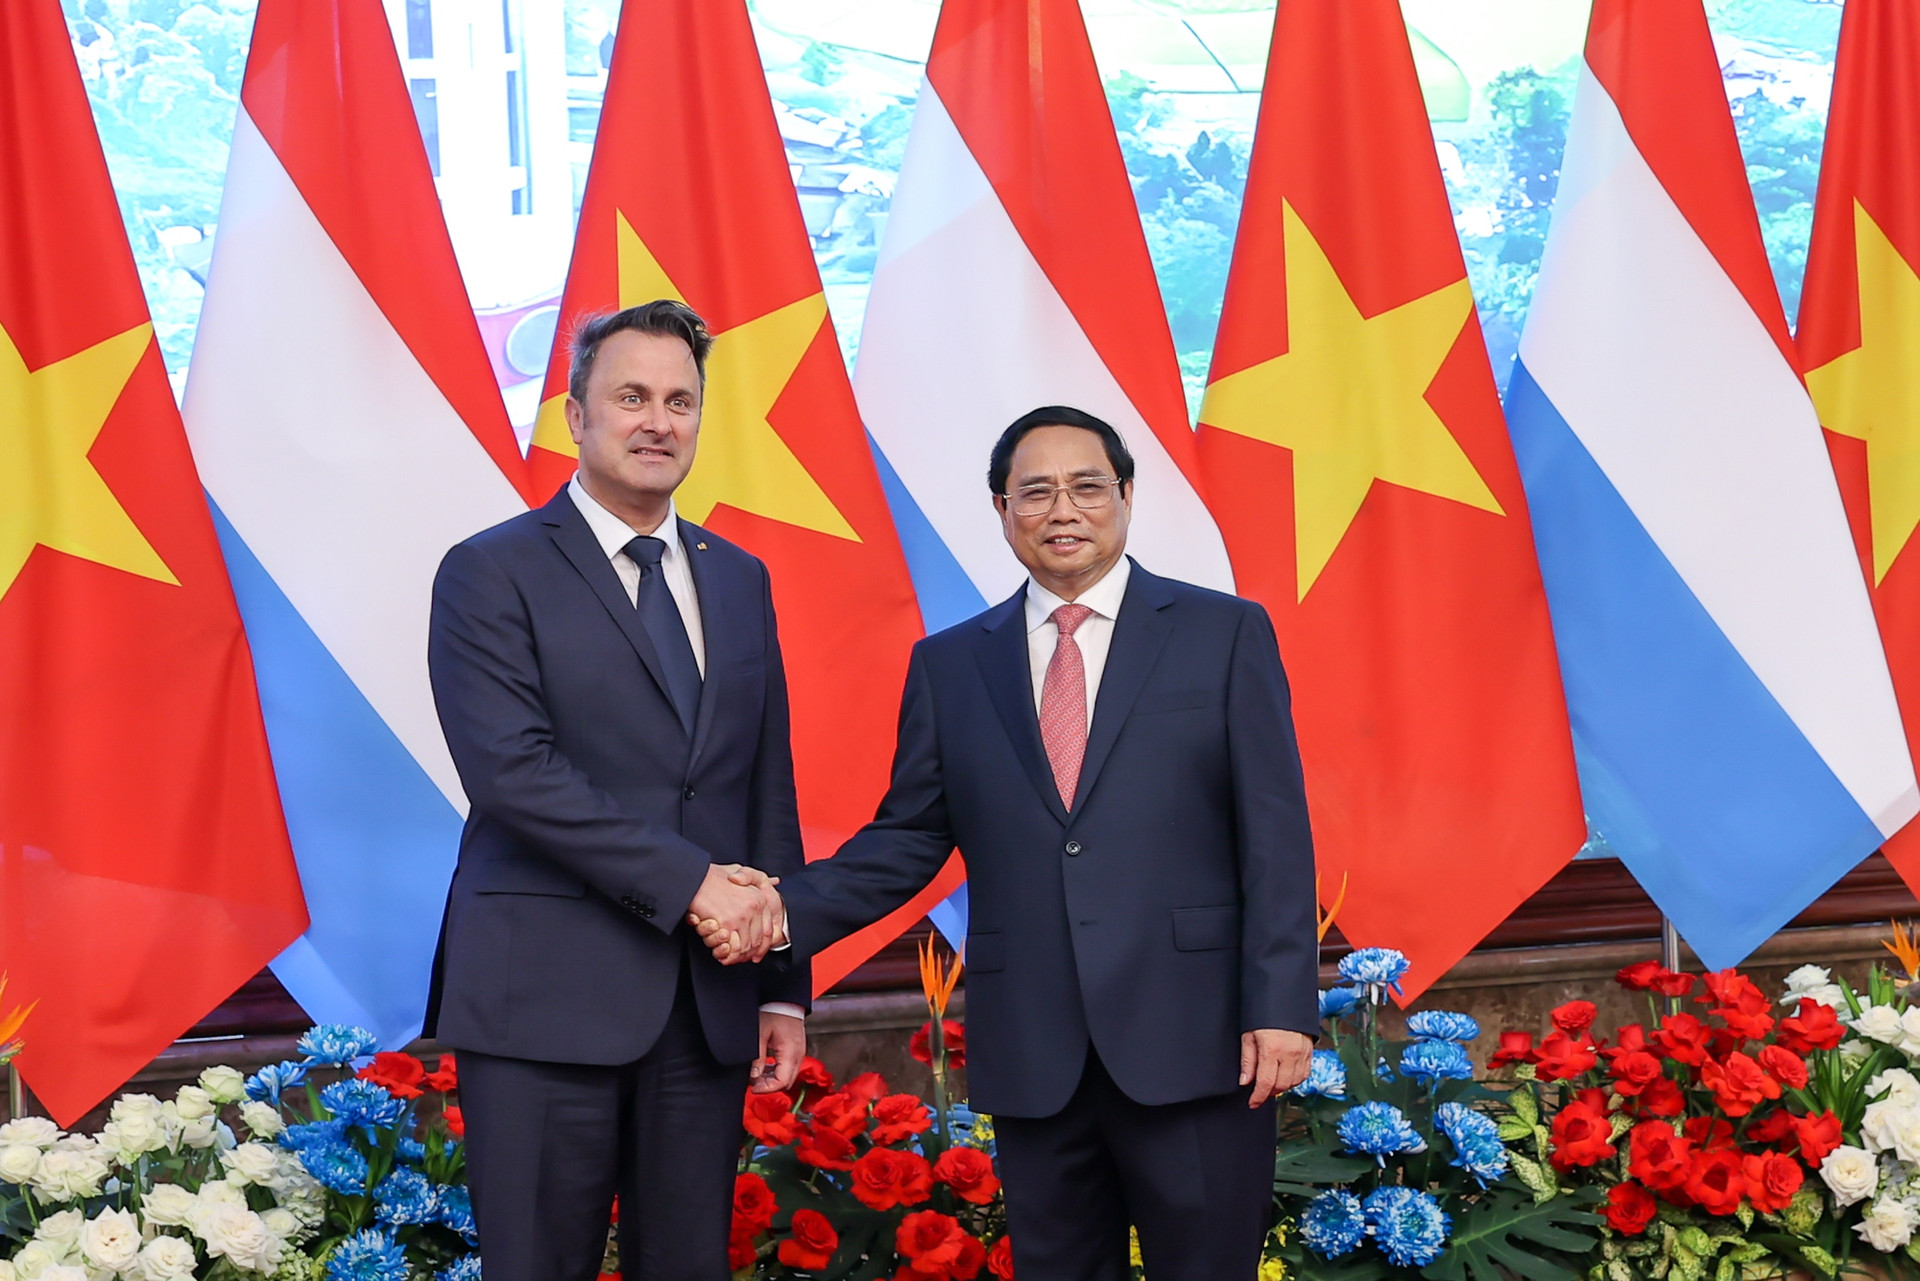 Trụ cột hợp tác mới làm sâu sắc hơn quan hệ Việt Nam-Luxembourg - Ảnh 1.